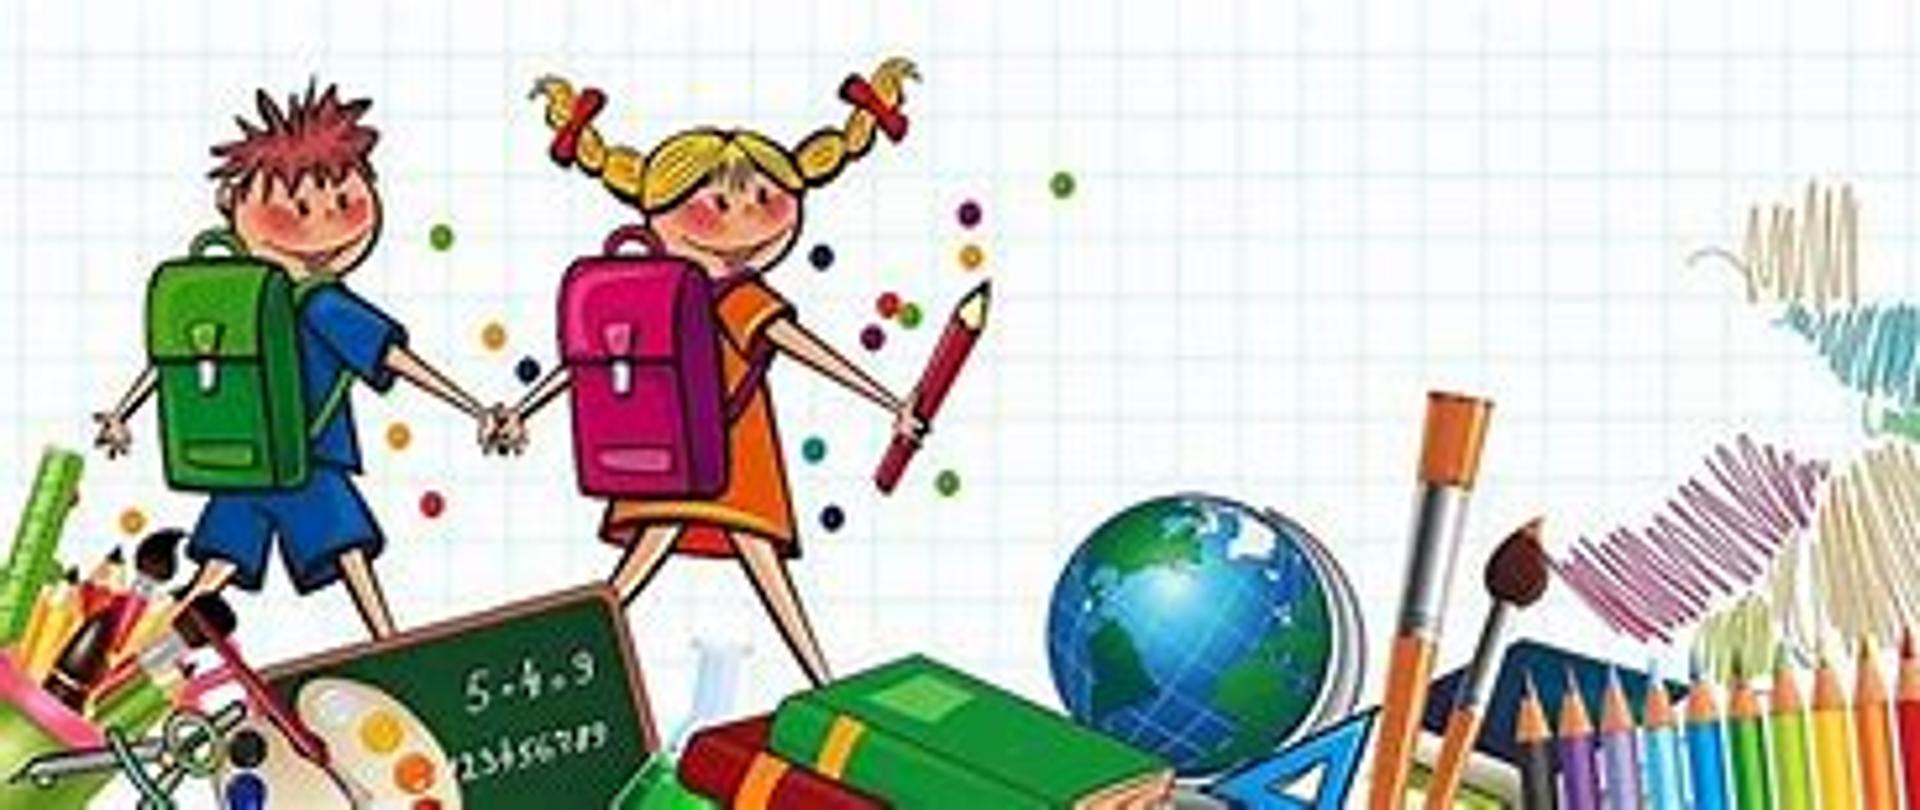 Kolorowy rysunek, dzieci z tornistrami wśród przyborów szkolnych